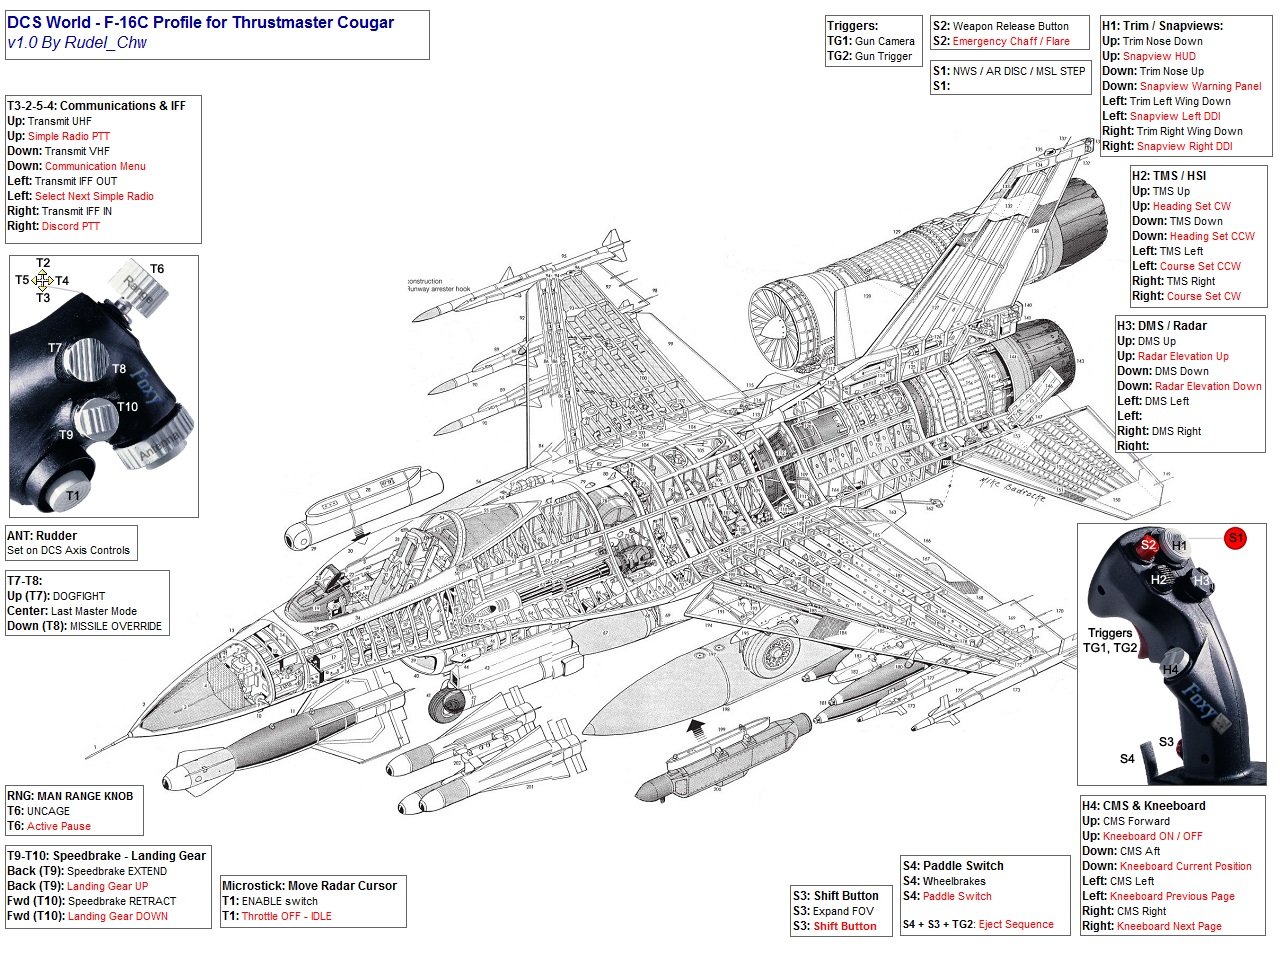 TM Hotas Cougar profile for DCS F-16C